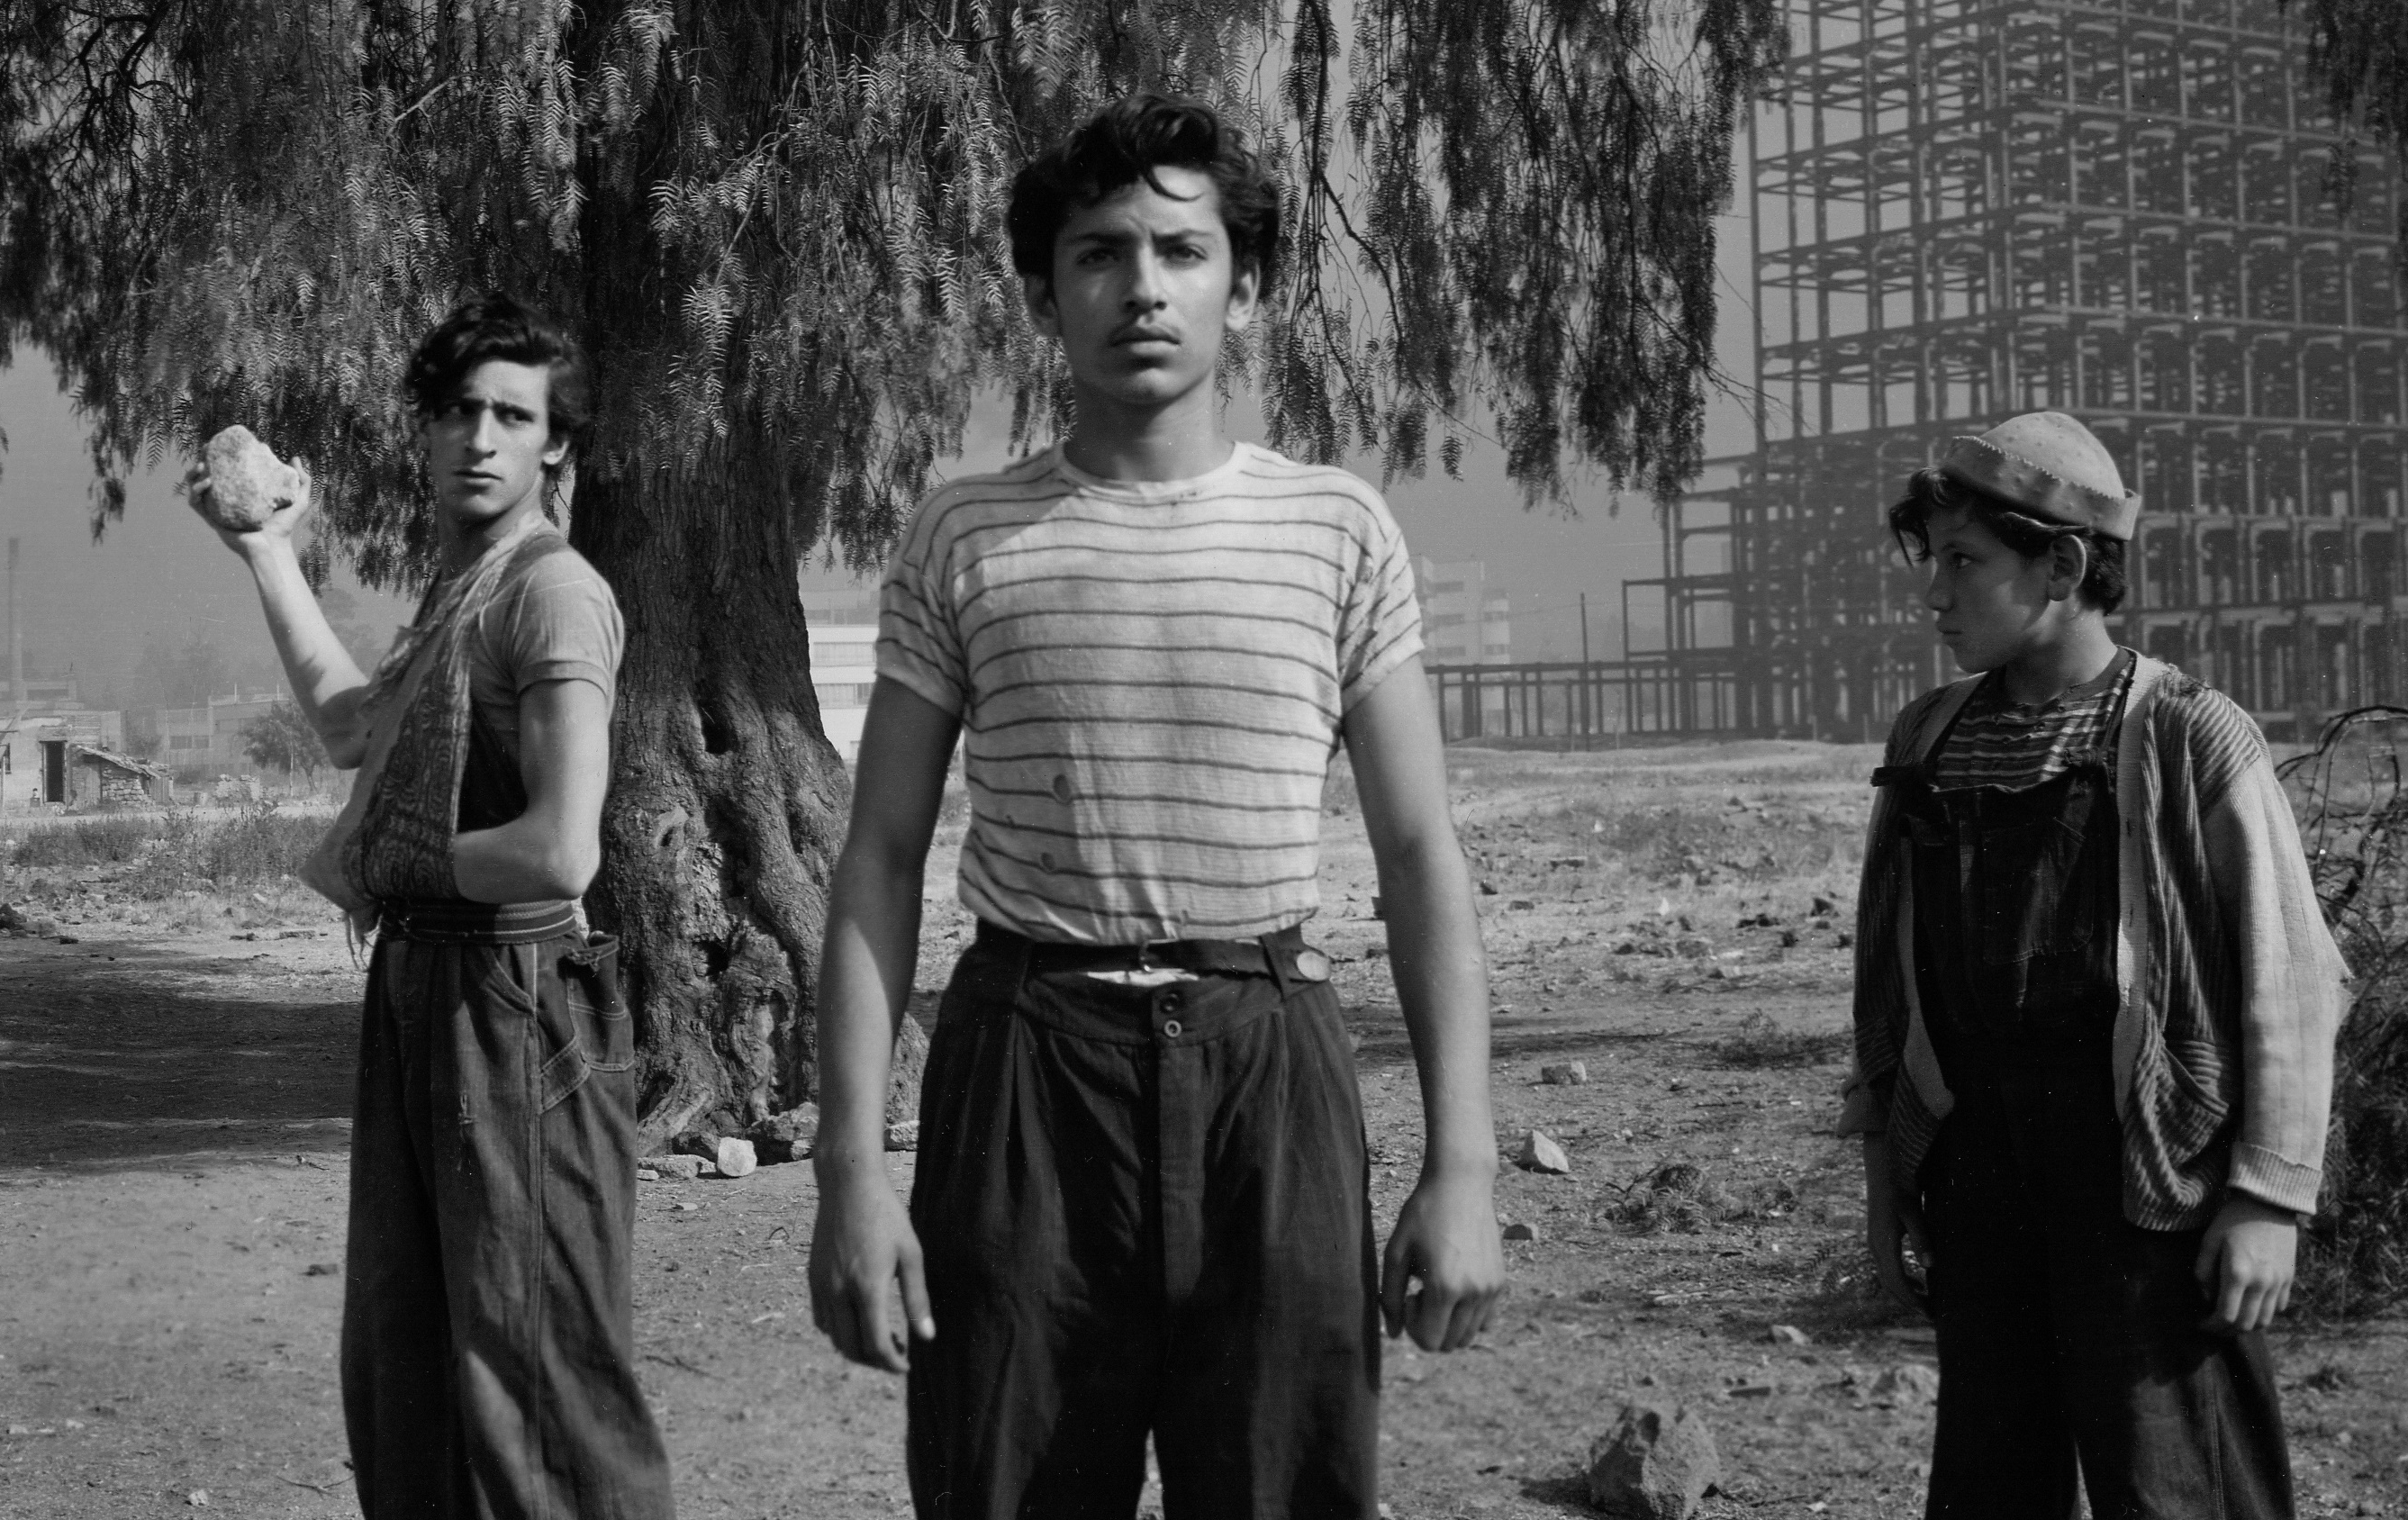 Miseria en los barrios, drama social y un final alternativo: 70 años de “Los  olvidados”, memoria histórica de Luis Buñuel - Infobae